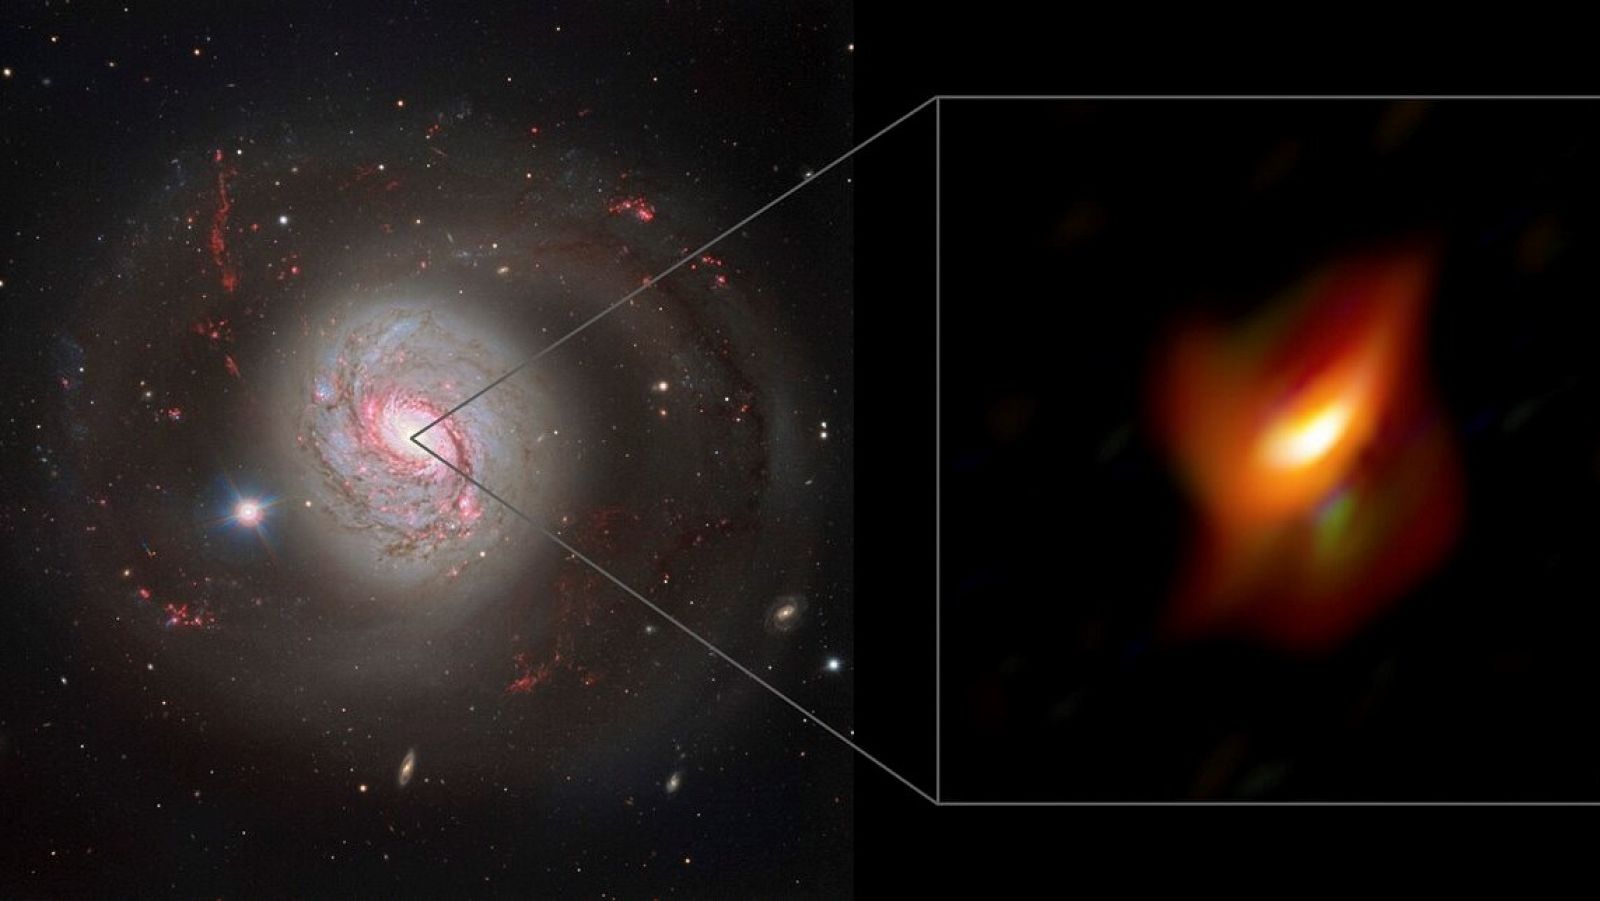 Observaciones de la densa nube de polvo que oculta un agujero negro supermasivo en el centro de la cercana galaxia Messier 77